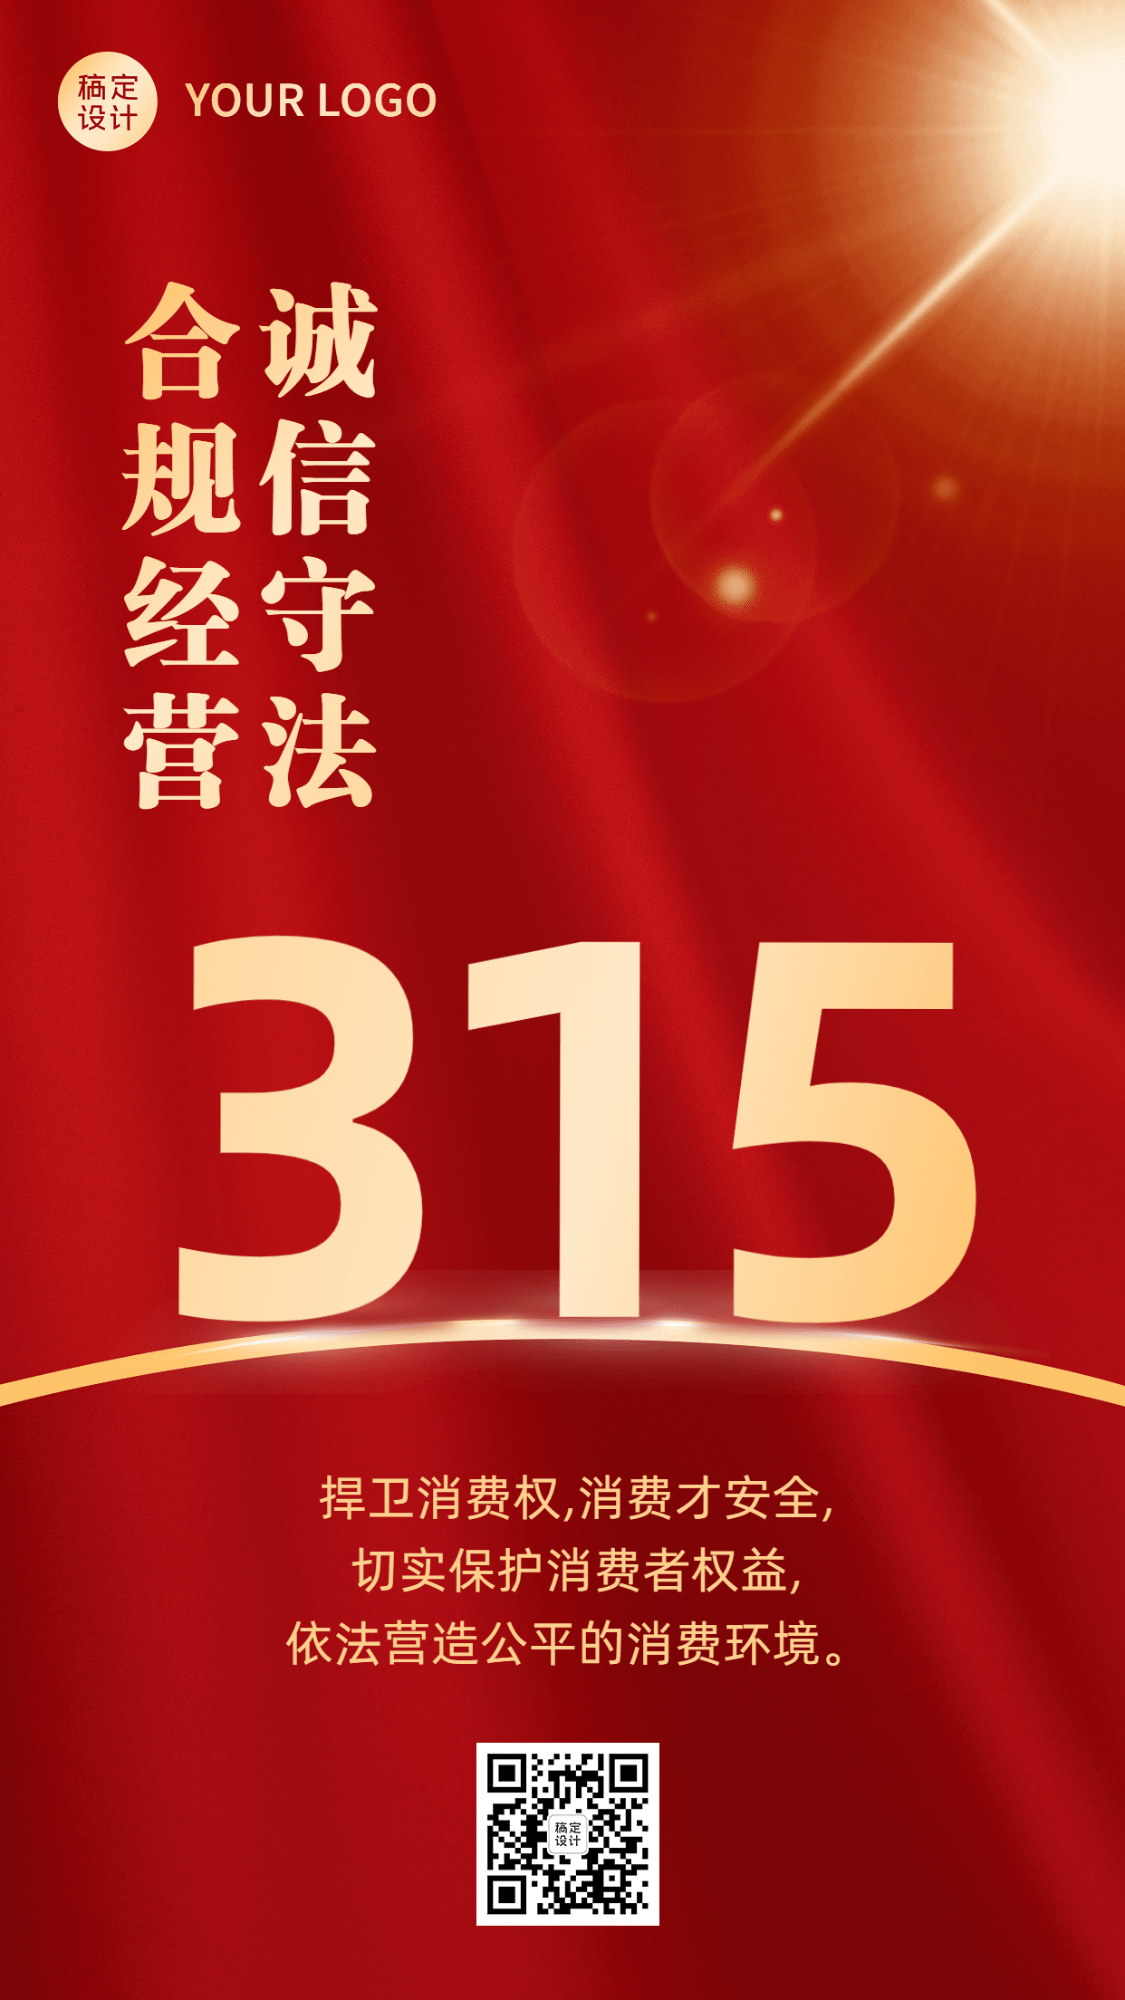 315消费者权益日节日宣传手机海报